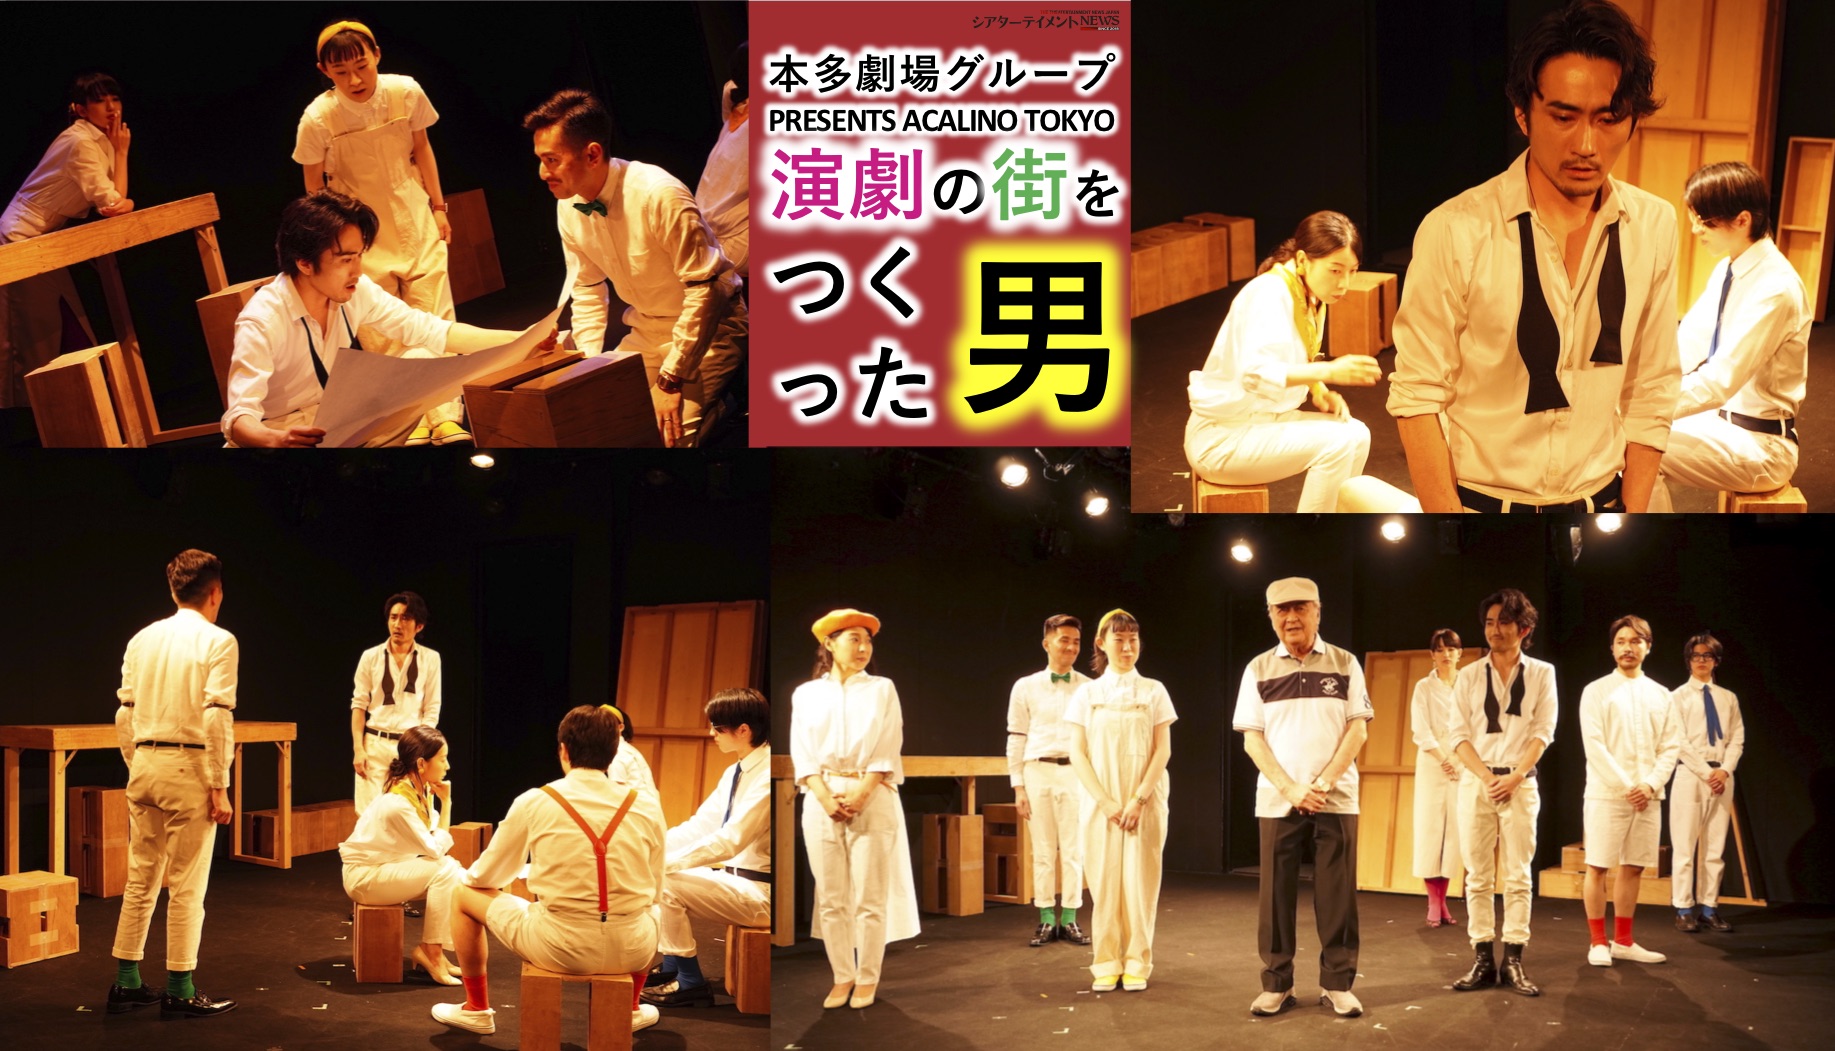 本多劇場グループ Presents Acalino Tokyo 演劇の街をつくった男 人間が持つエネルギー 夢を 想いを現実に どんな時代が来ようとも これだけはなくならない シアターテイメントnews